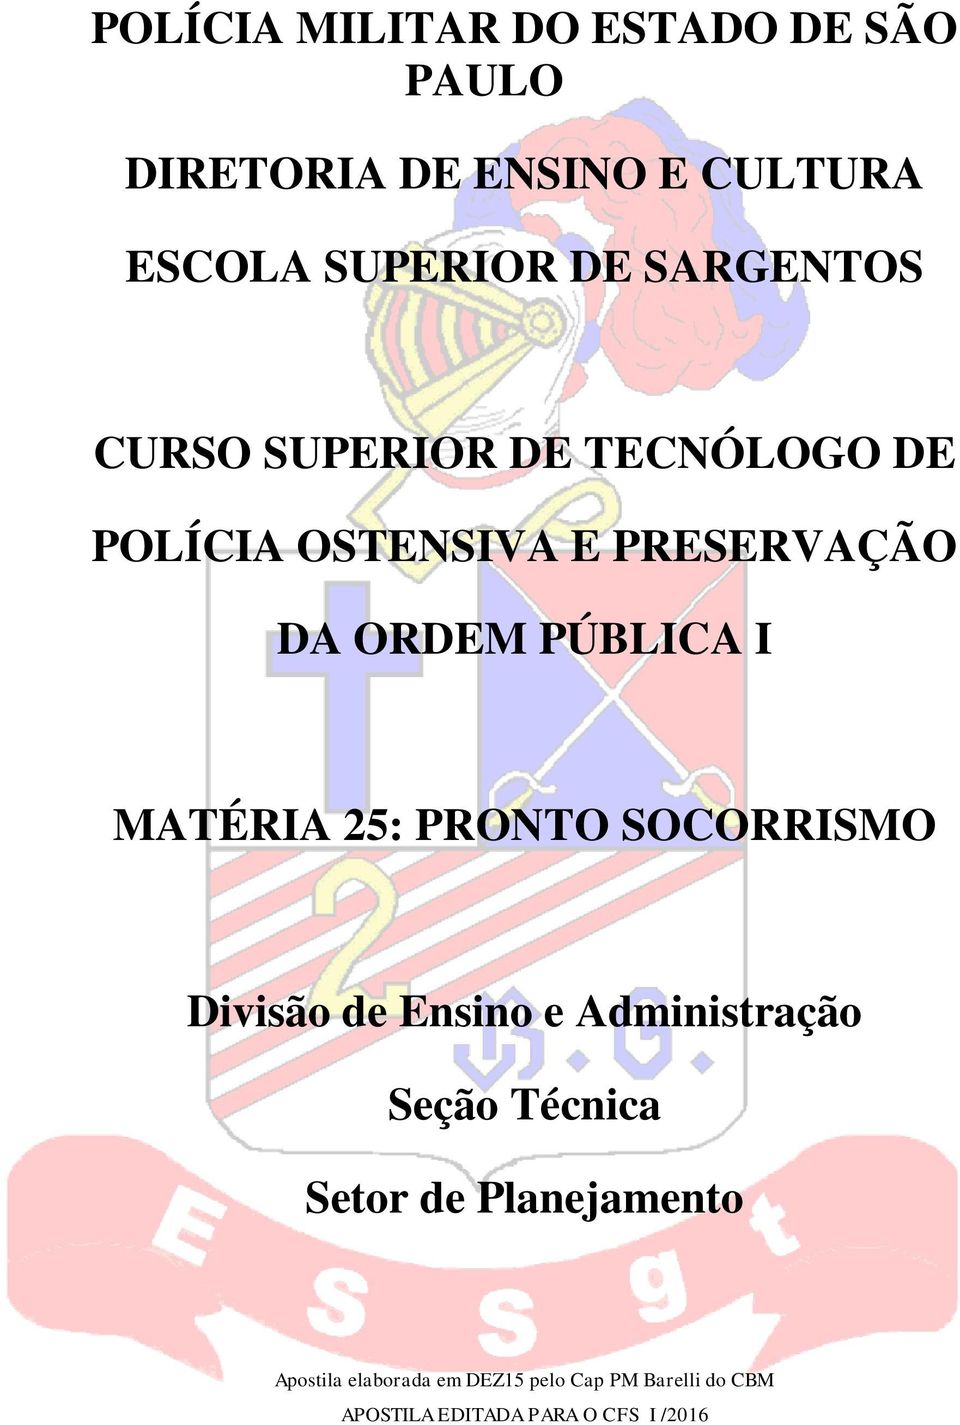 MATÉRIA 25: PRONTO SOCORRISMO Divisão de Ensino e Administração Seção Técnica Setor de